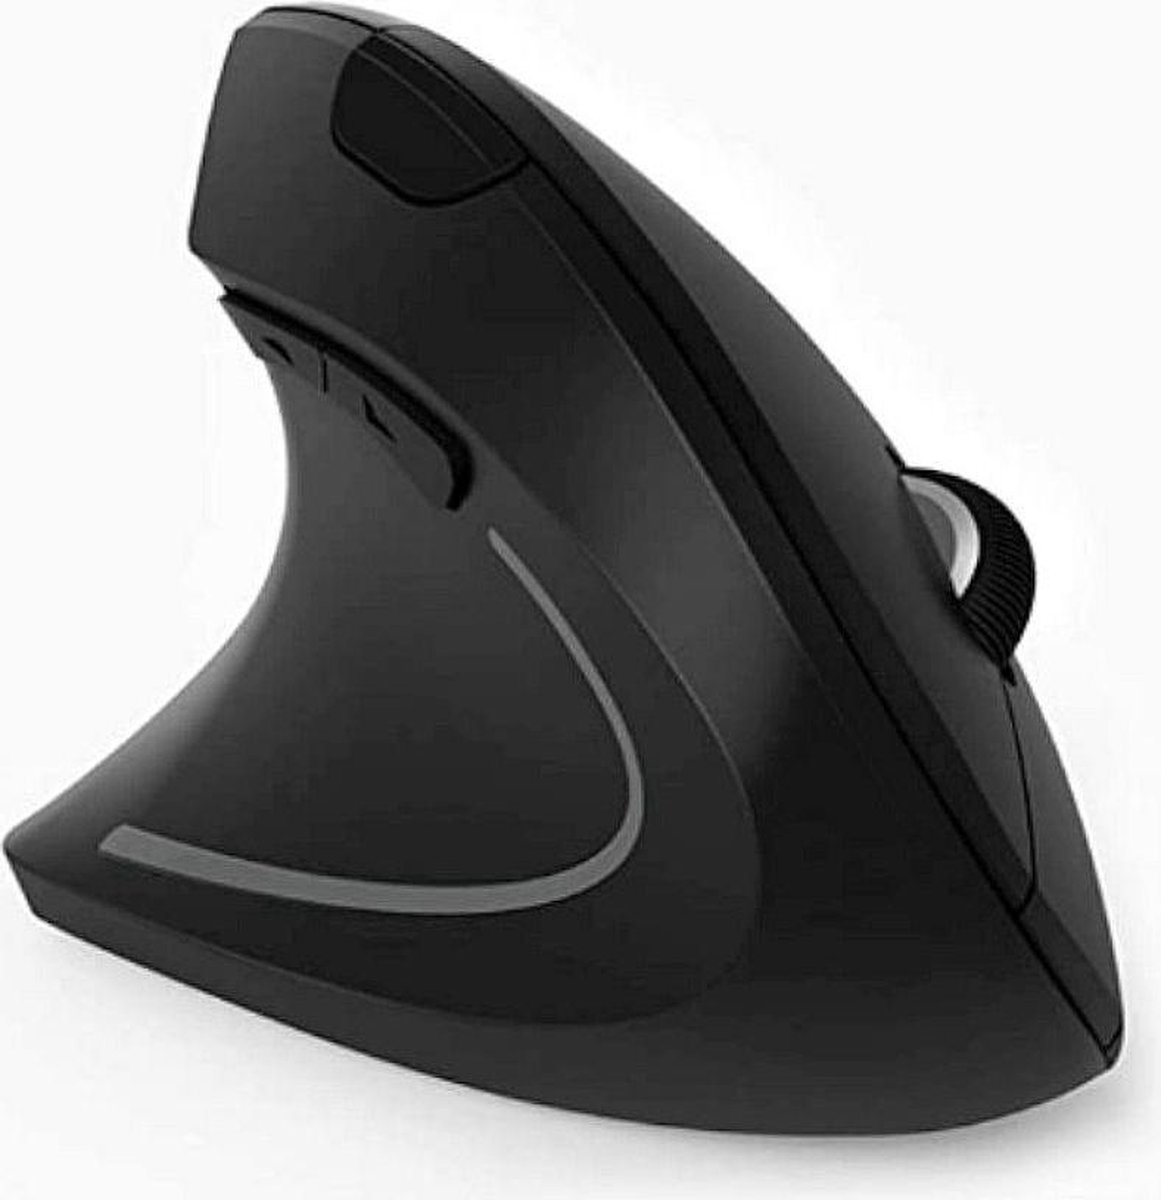 High Five verticale draadloze ergonomische muis 2.4GHz, voor LINKSHANDIGEN, vooruit/achteruit knoppen, Windows, Mac OS, 800-1600 DPI, 5 knoppen zwart